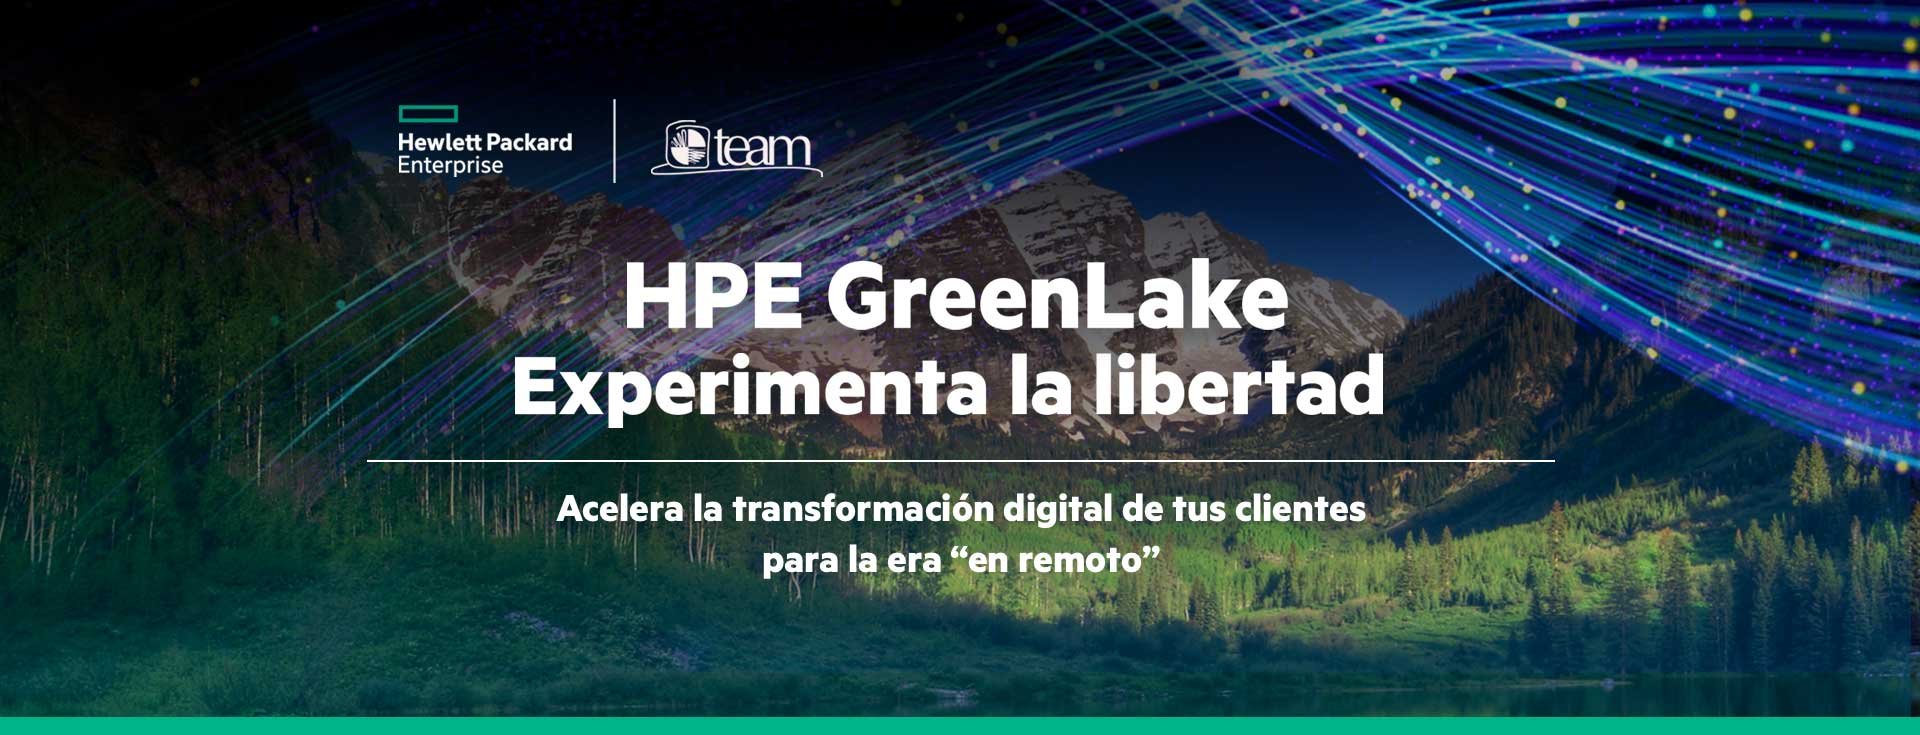 HPE Greenlake - Acelera la transformación digital de tus clientes